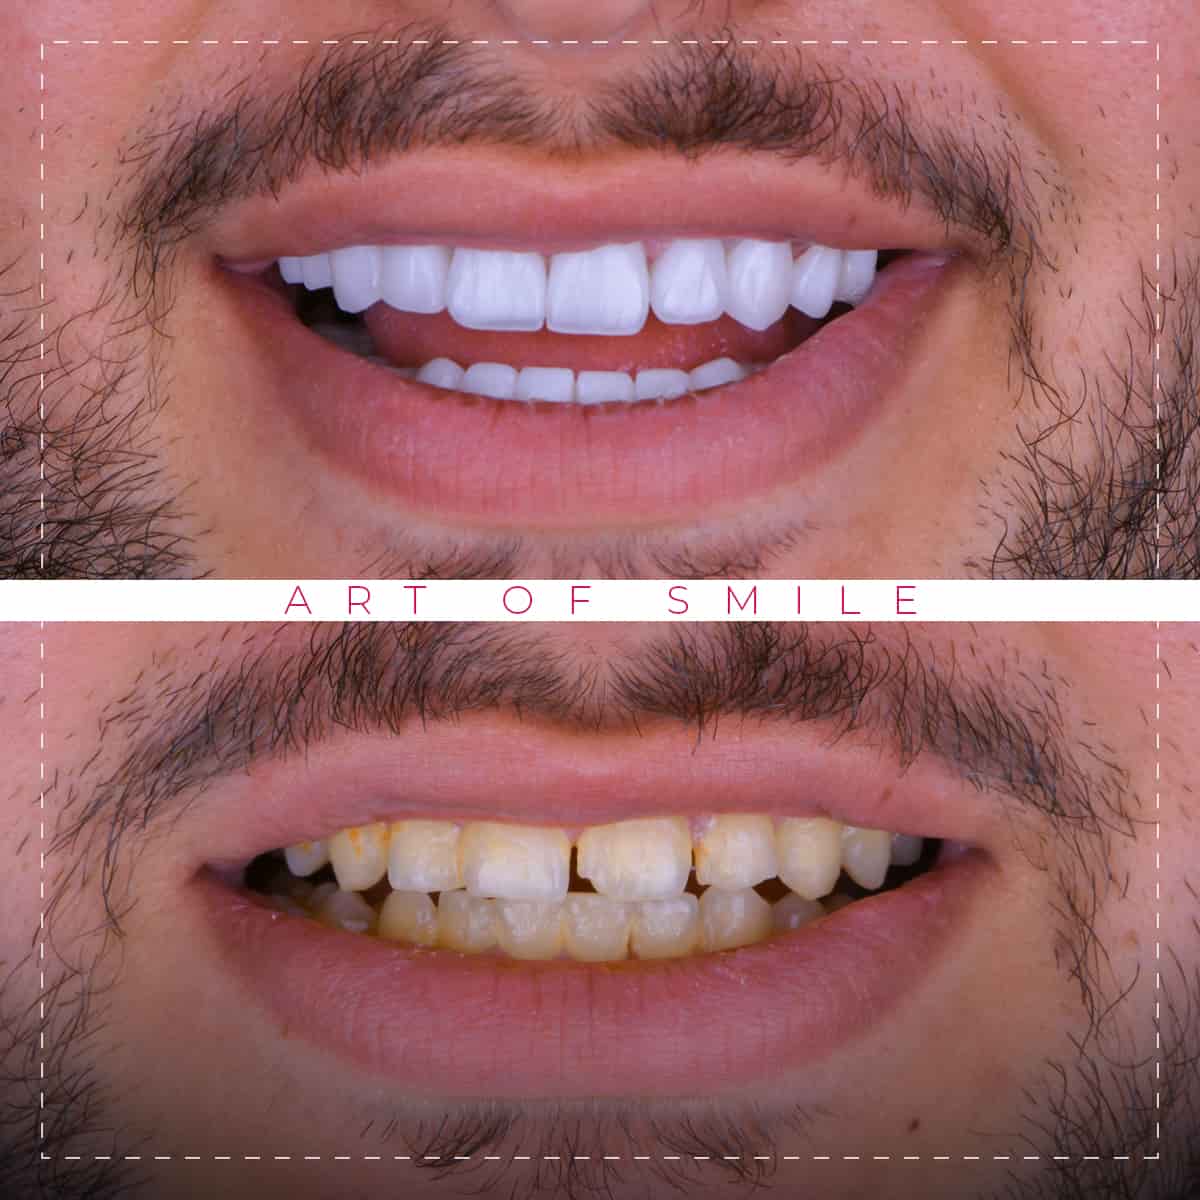 Ästhetische Zahnheilkunde vorher und nachher, Zahnreinigung, Hollywood-Lächeln, Zahnimplantate